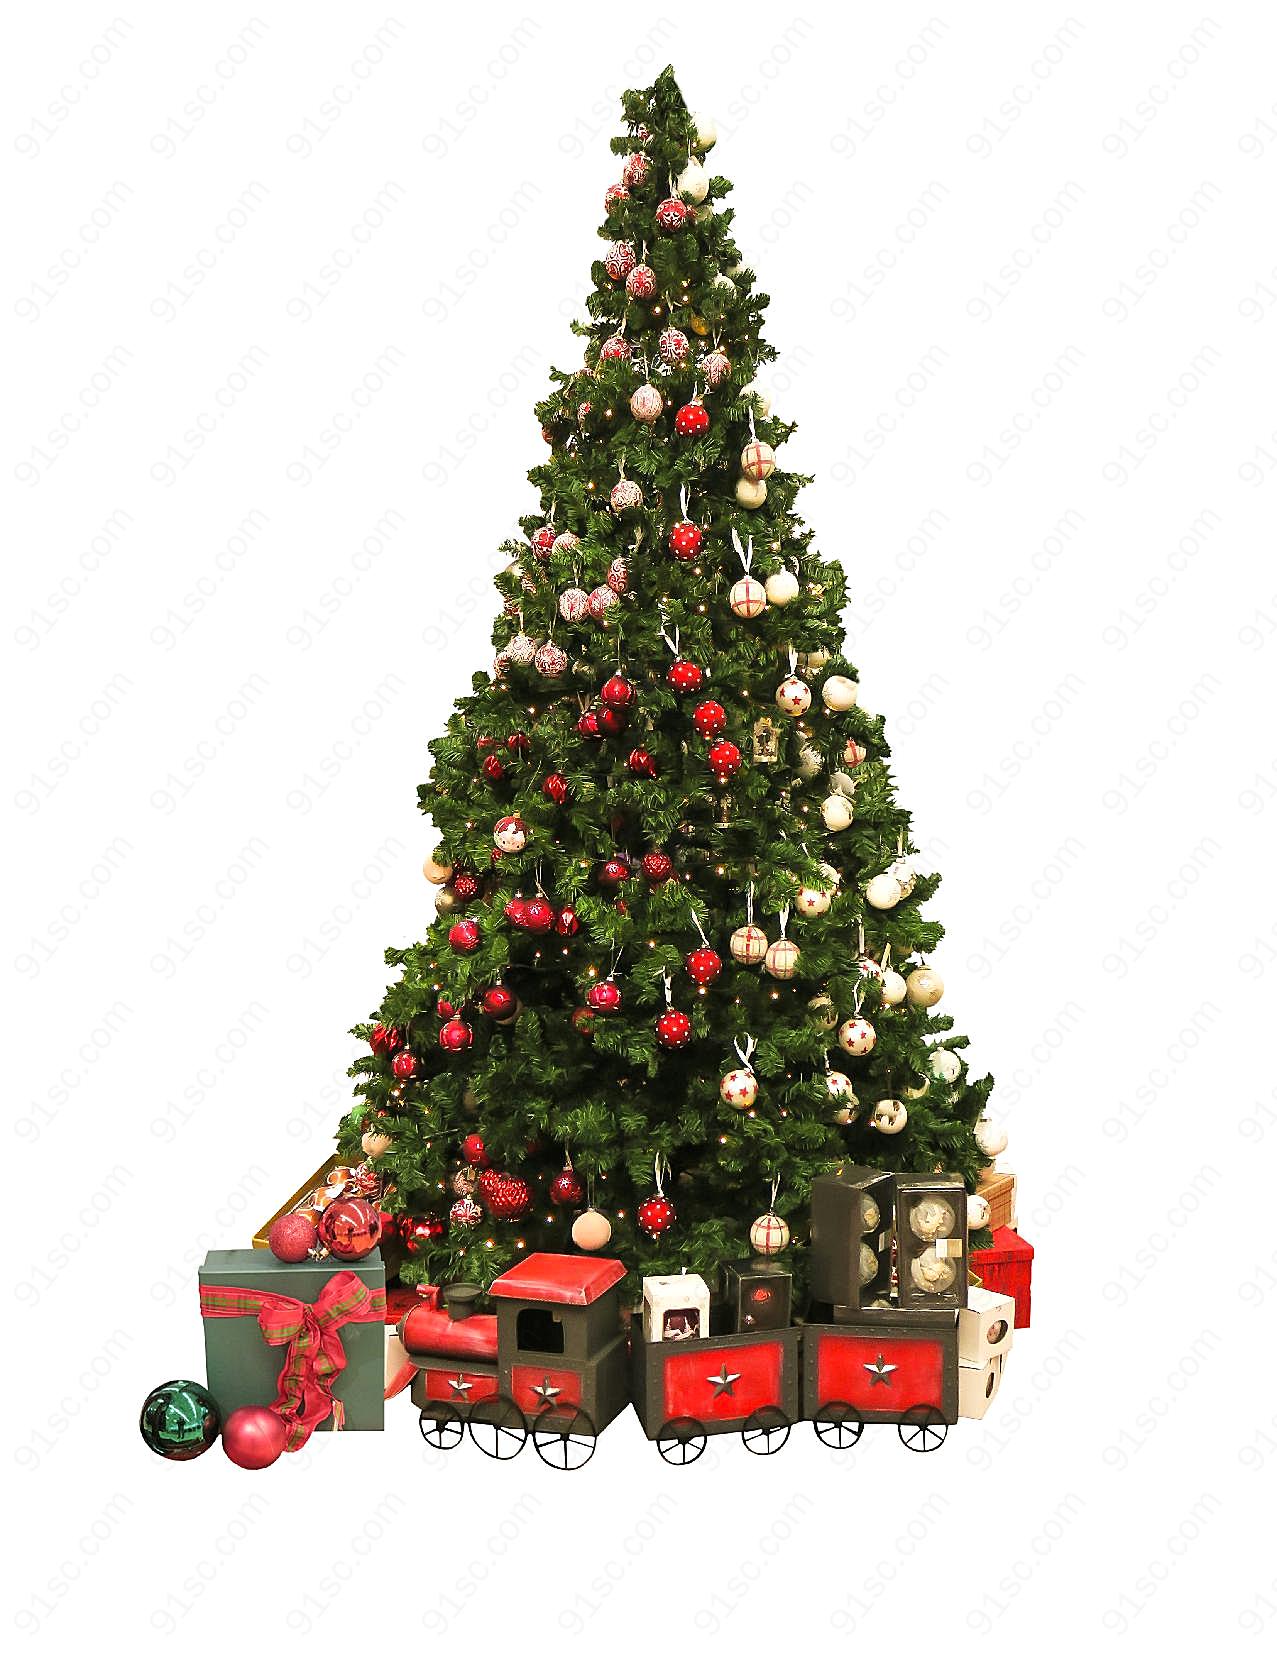 圣诞树装扮图片高清节日